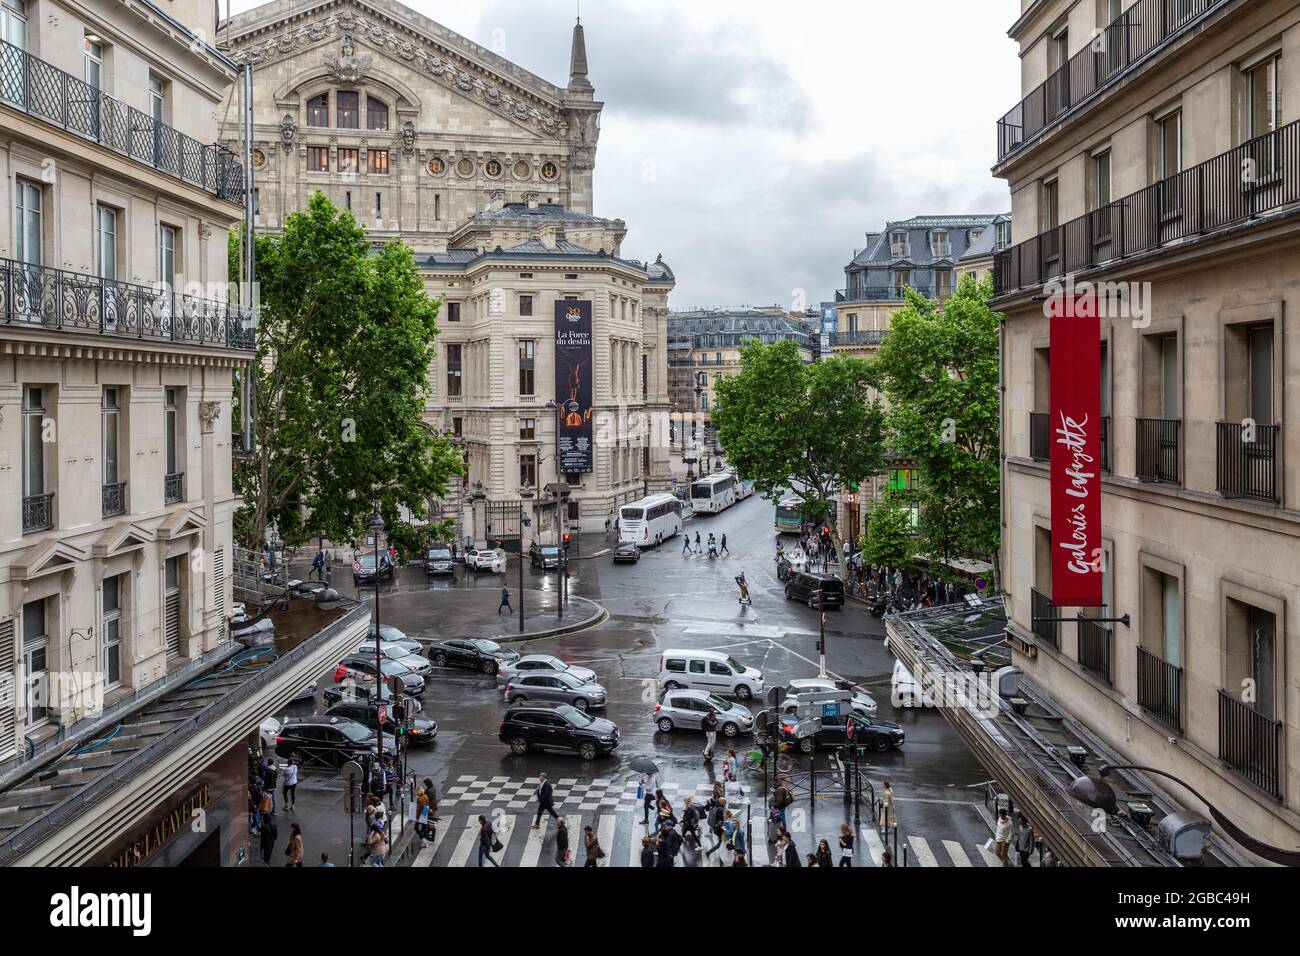 Das Opernhaus Garnier von der Fußgängerbrücke der Galerie Lafayette, rue de Mogador, Paris aus gesehen Stockfoto